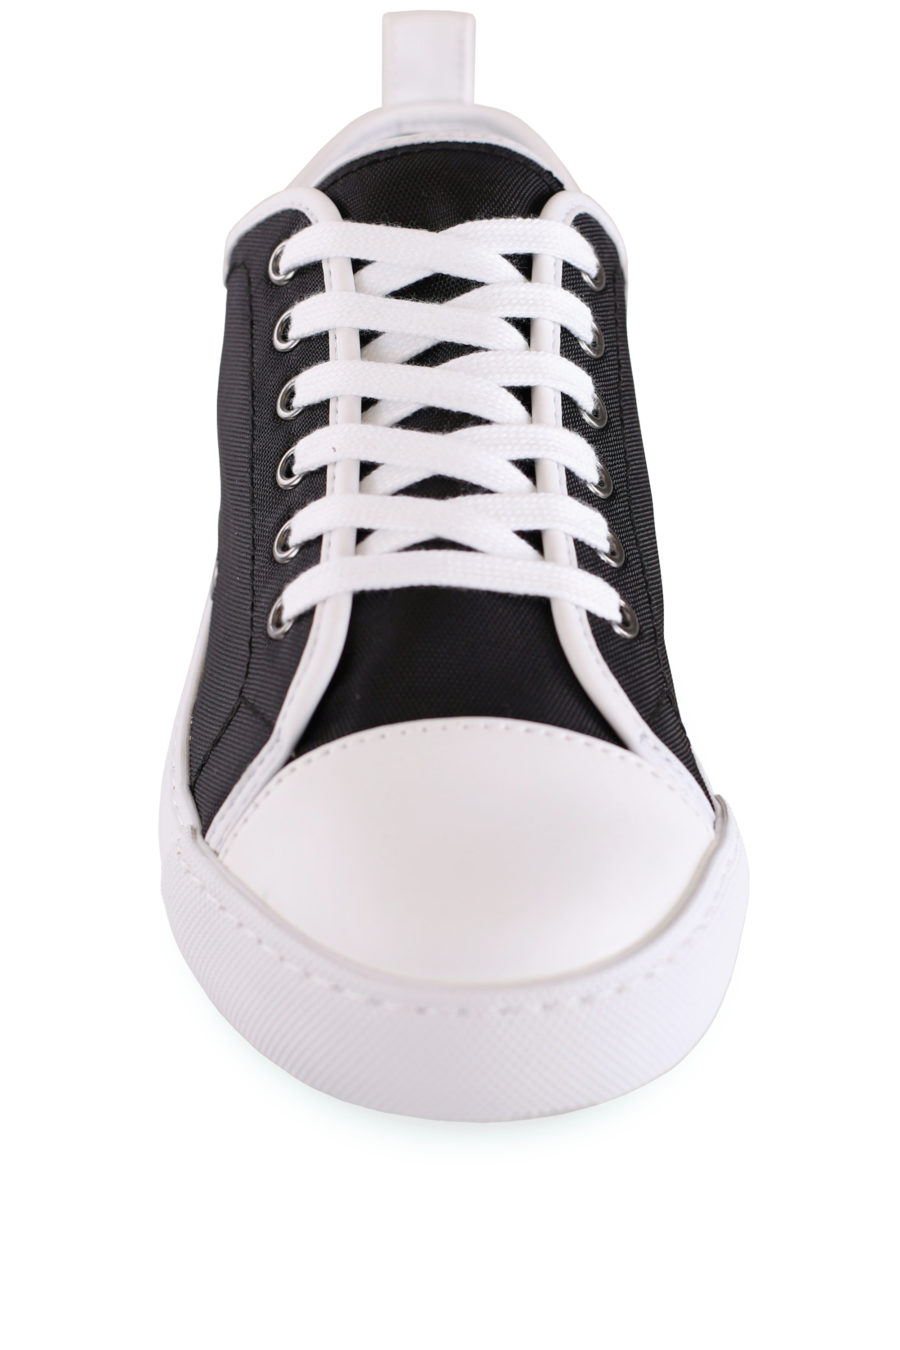 Zapatillas negras con borde blanco y logo - IMG 8420 copia